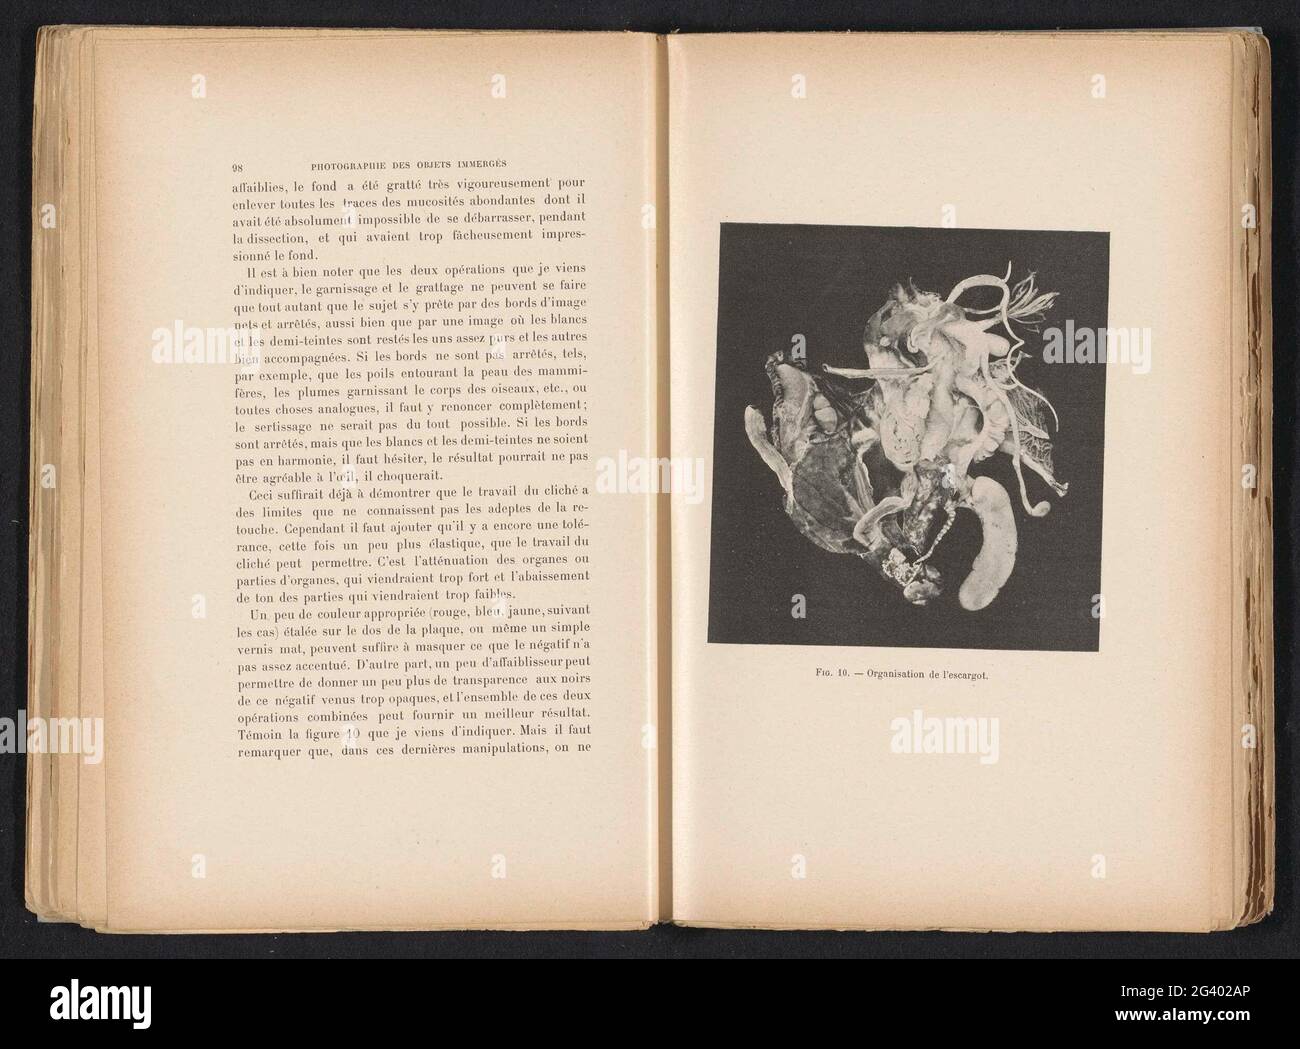 Anatomia Van een Slak; Organizzazione della lumaca. Prant nell'album 'la fotografia di oggetti immersi', 1901. Foto Stock